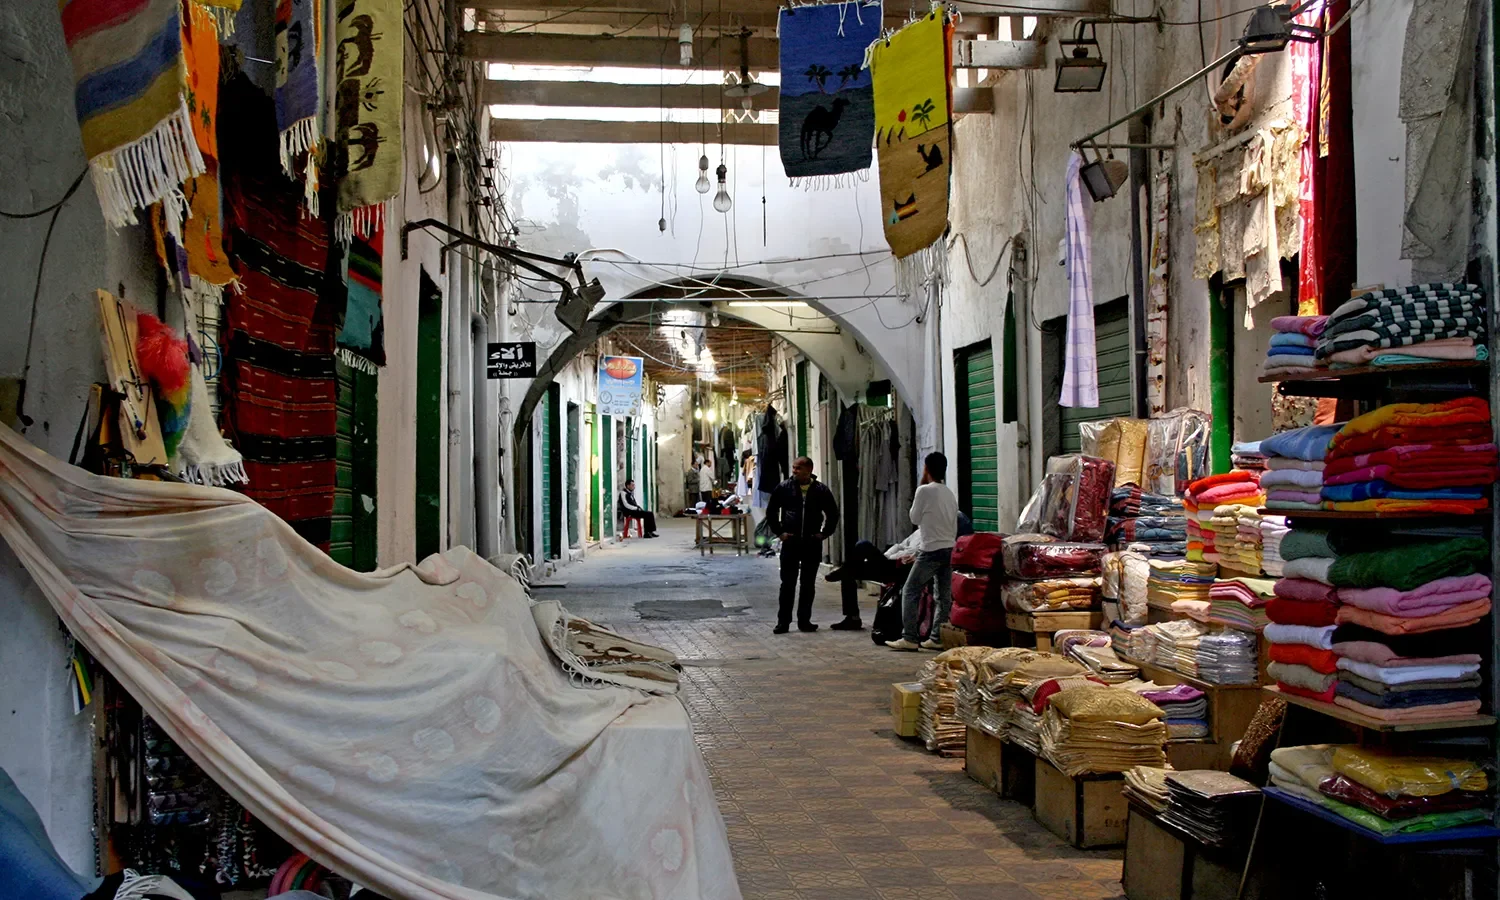 أزمة أقتصادية داخل أسواق ليبيا تؤدي لكارثة